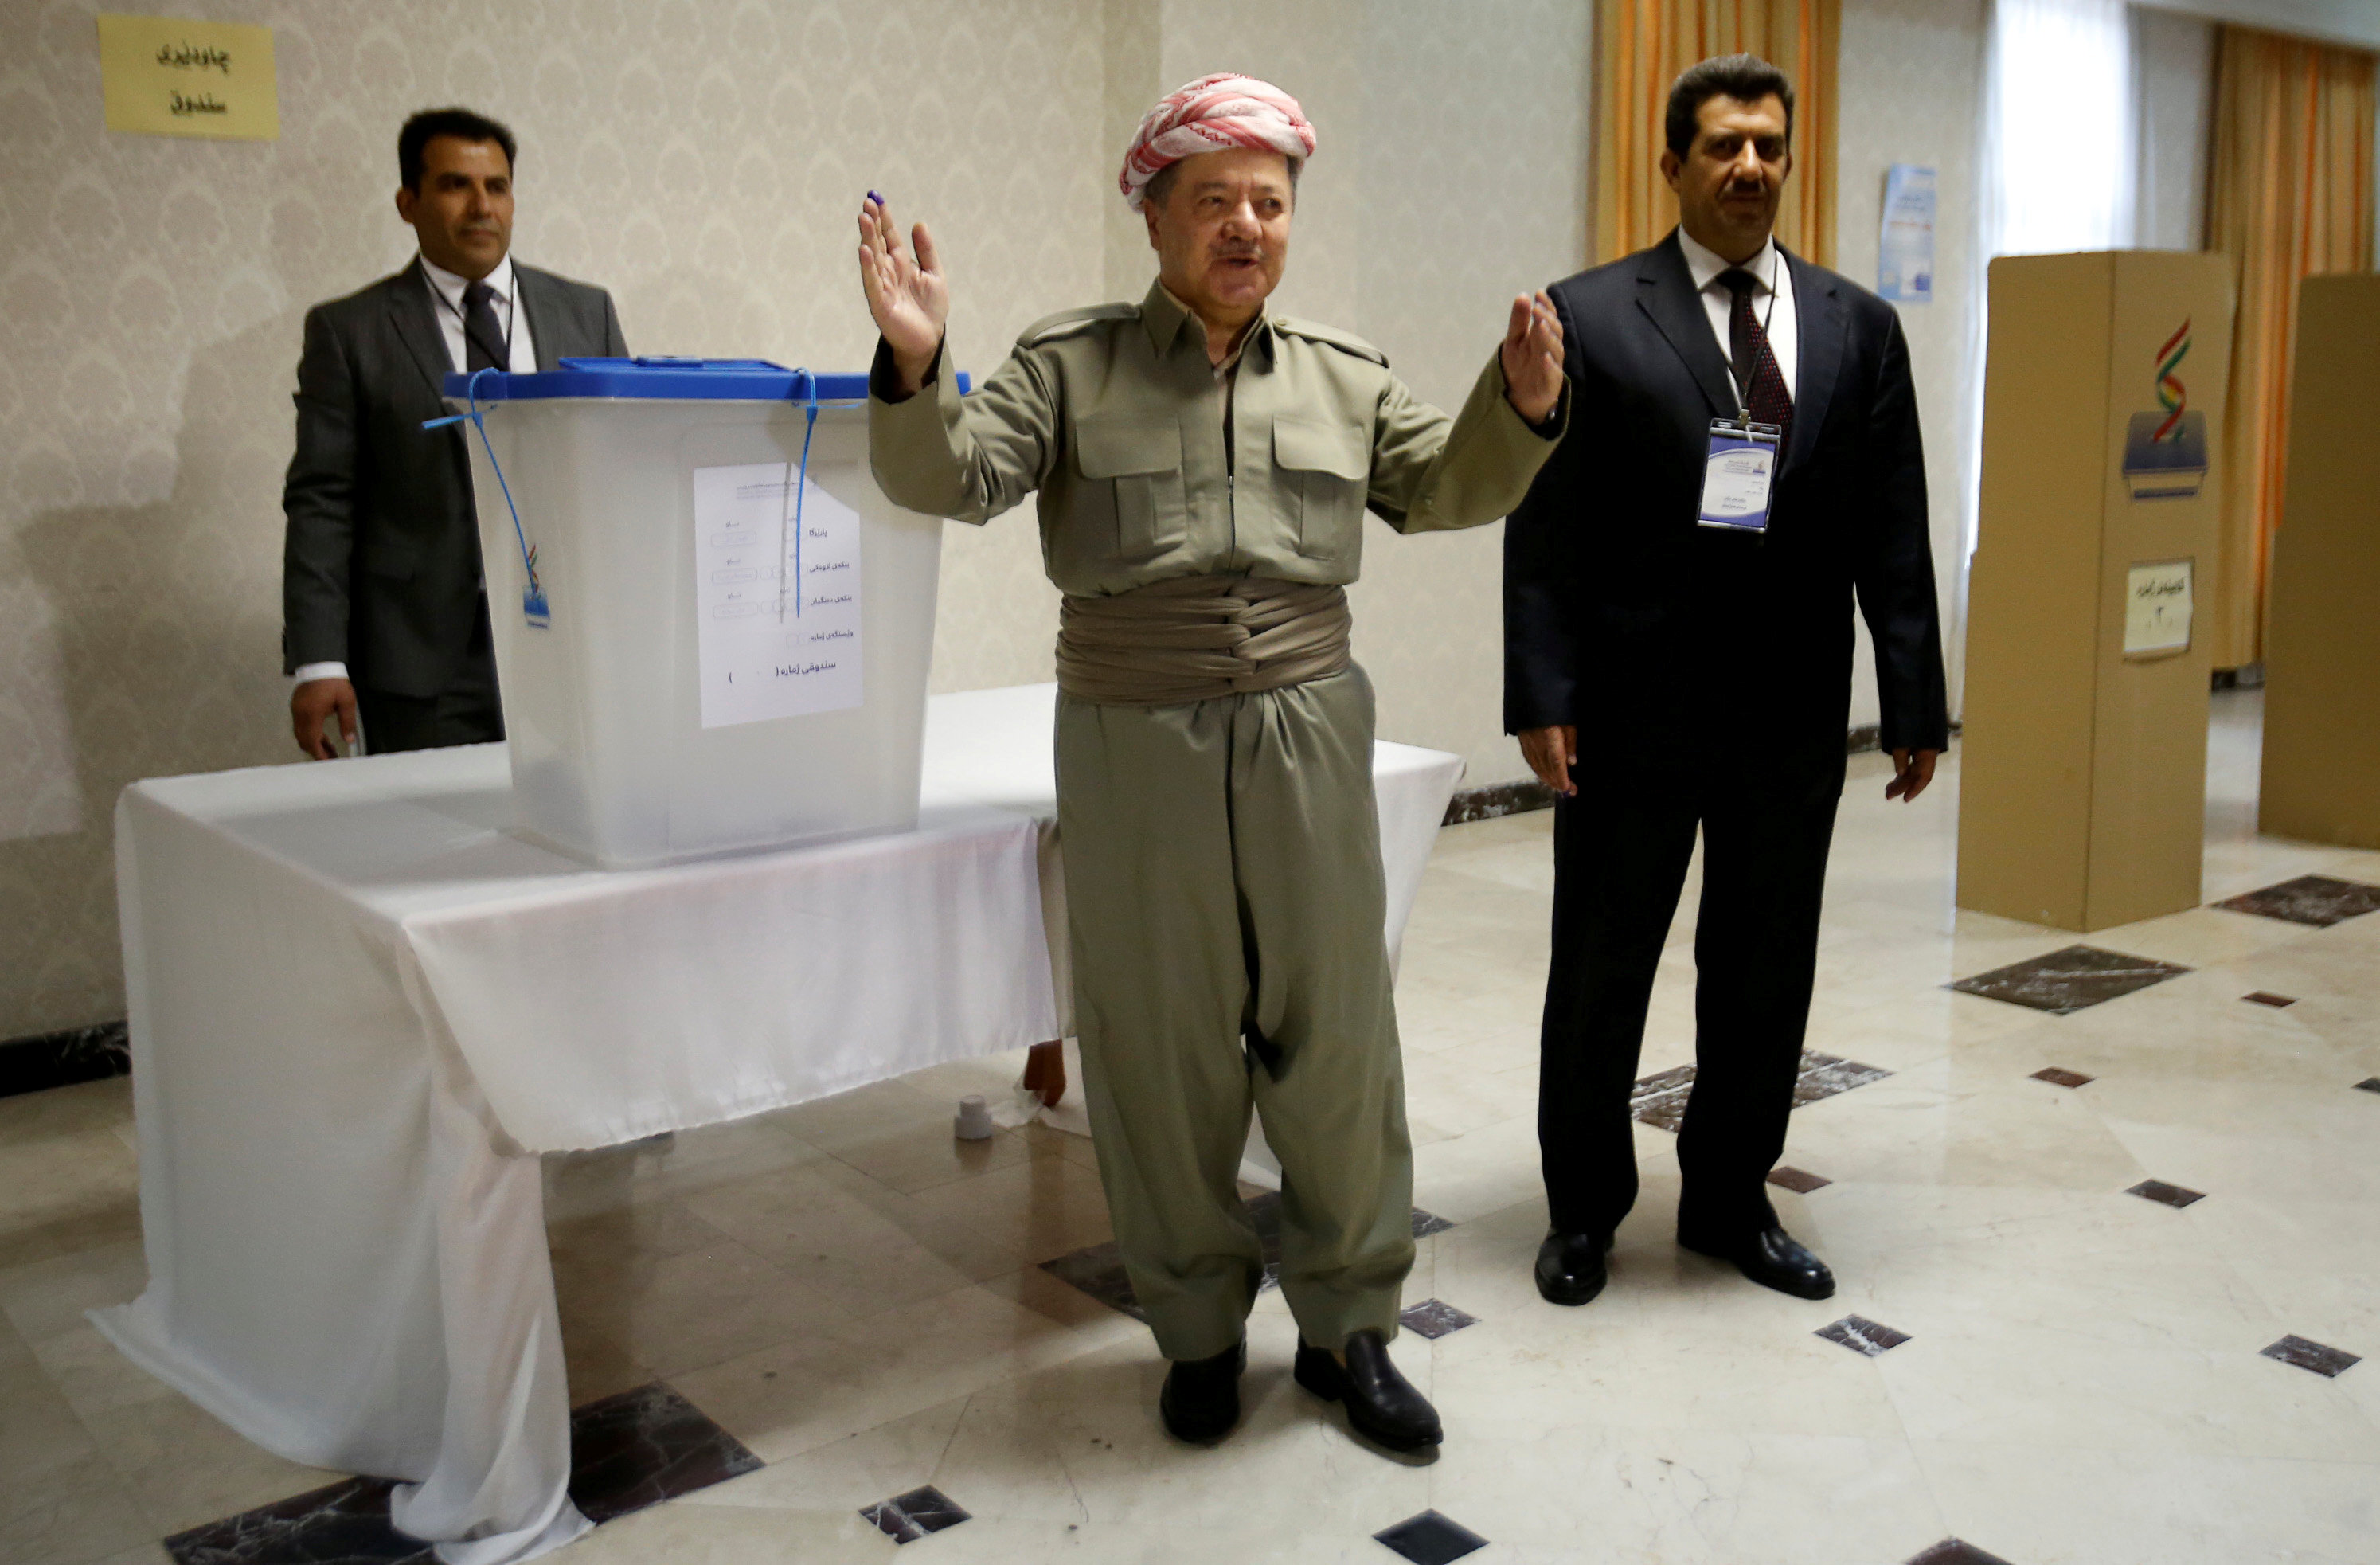 El presidente kurdo Masud Barzani, principal impulsor de la consulta, ejerció su voto a primera hora.